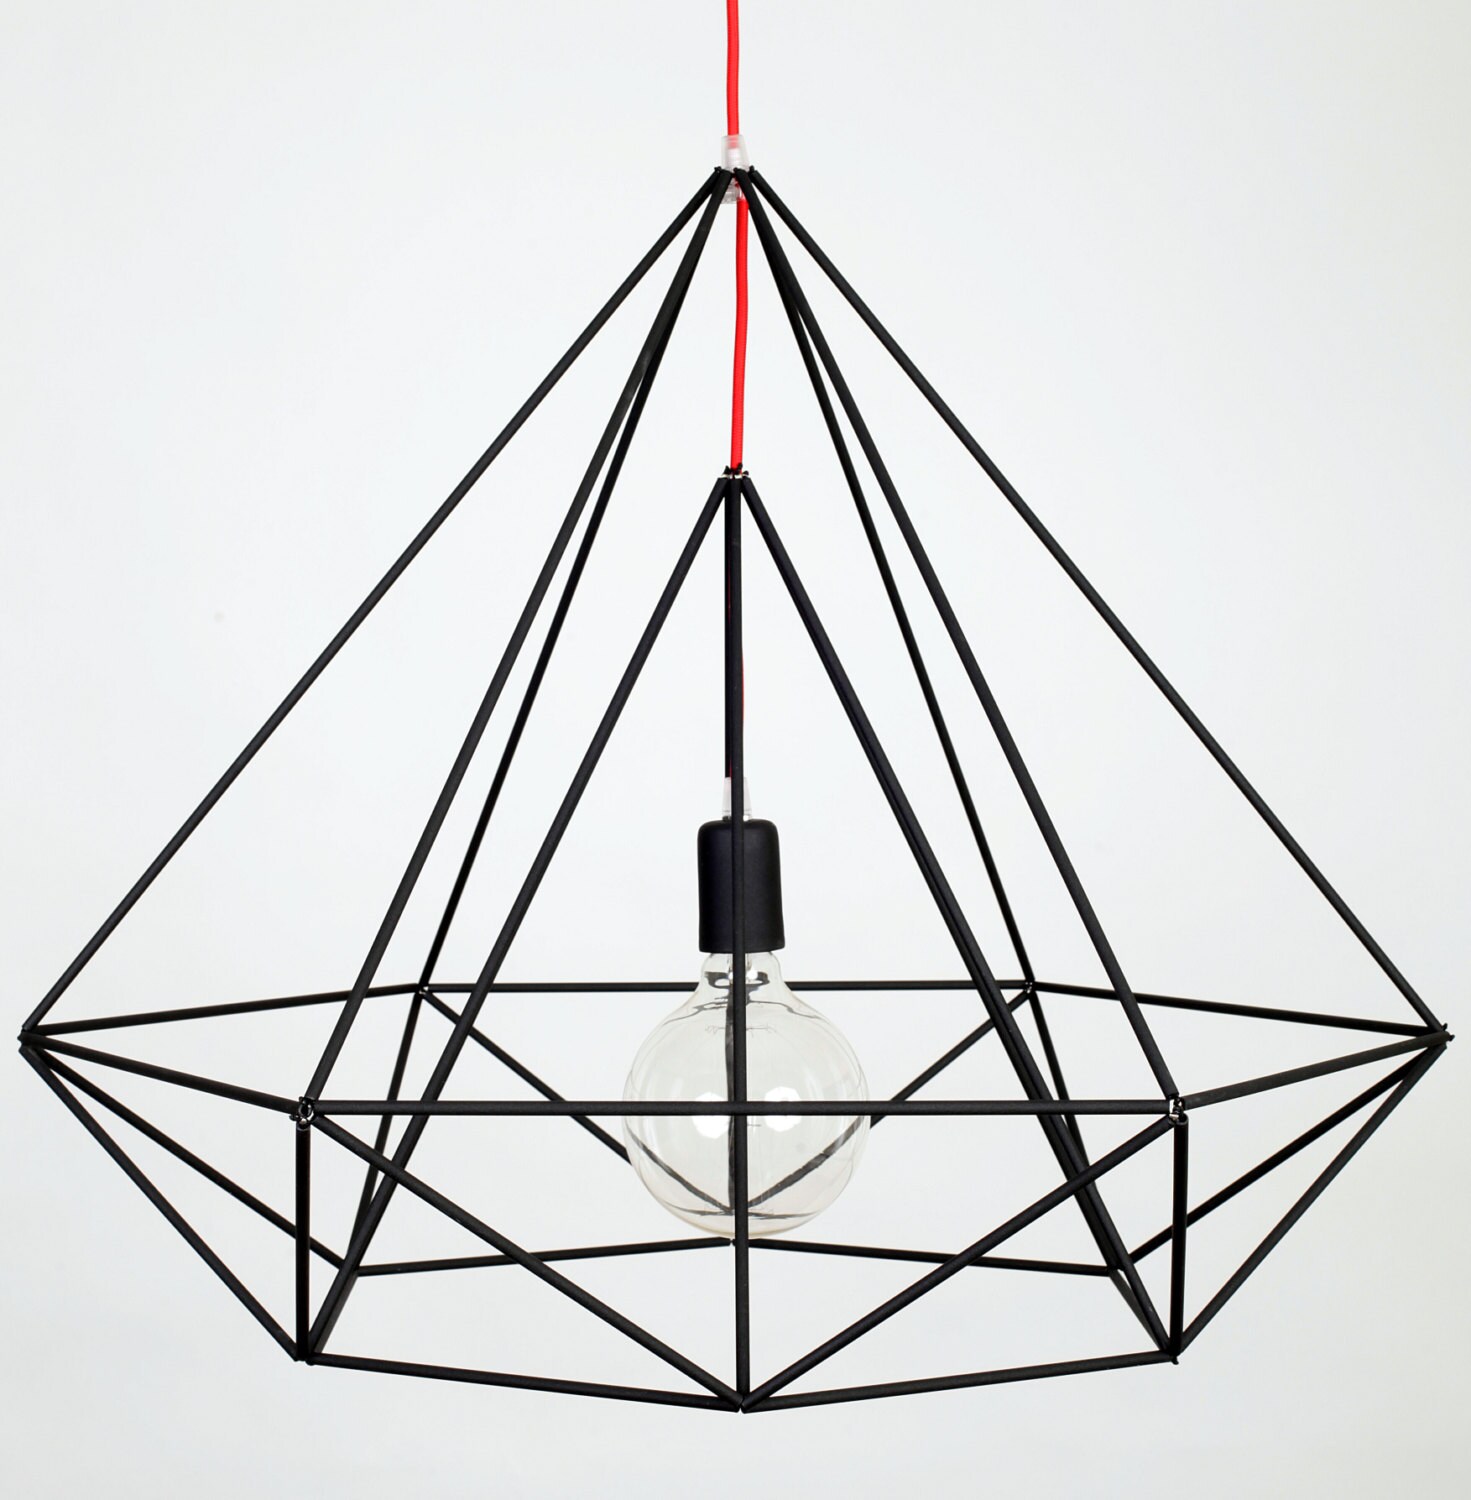 Desain Lampu Gantung Modern Rumah Minimalis Rooang Bentuk Rangka Geometris